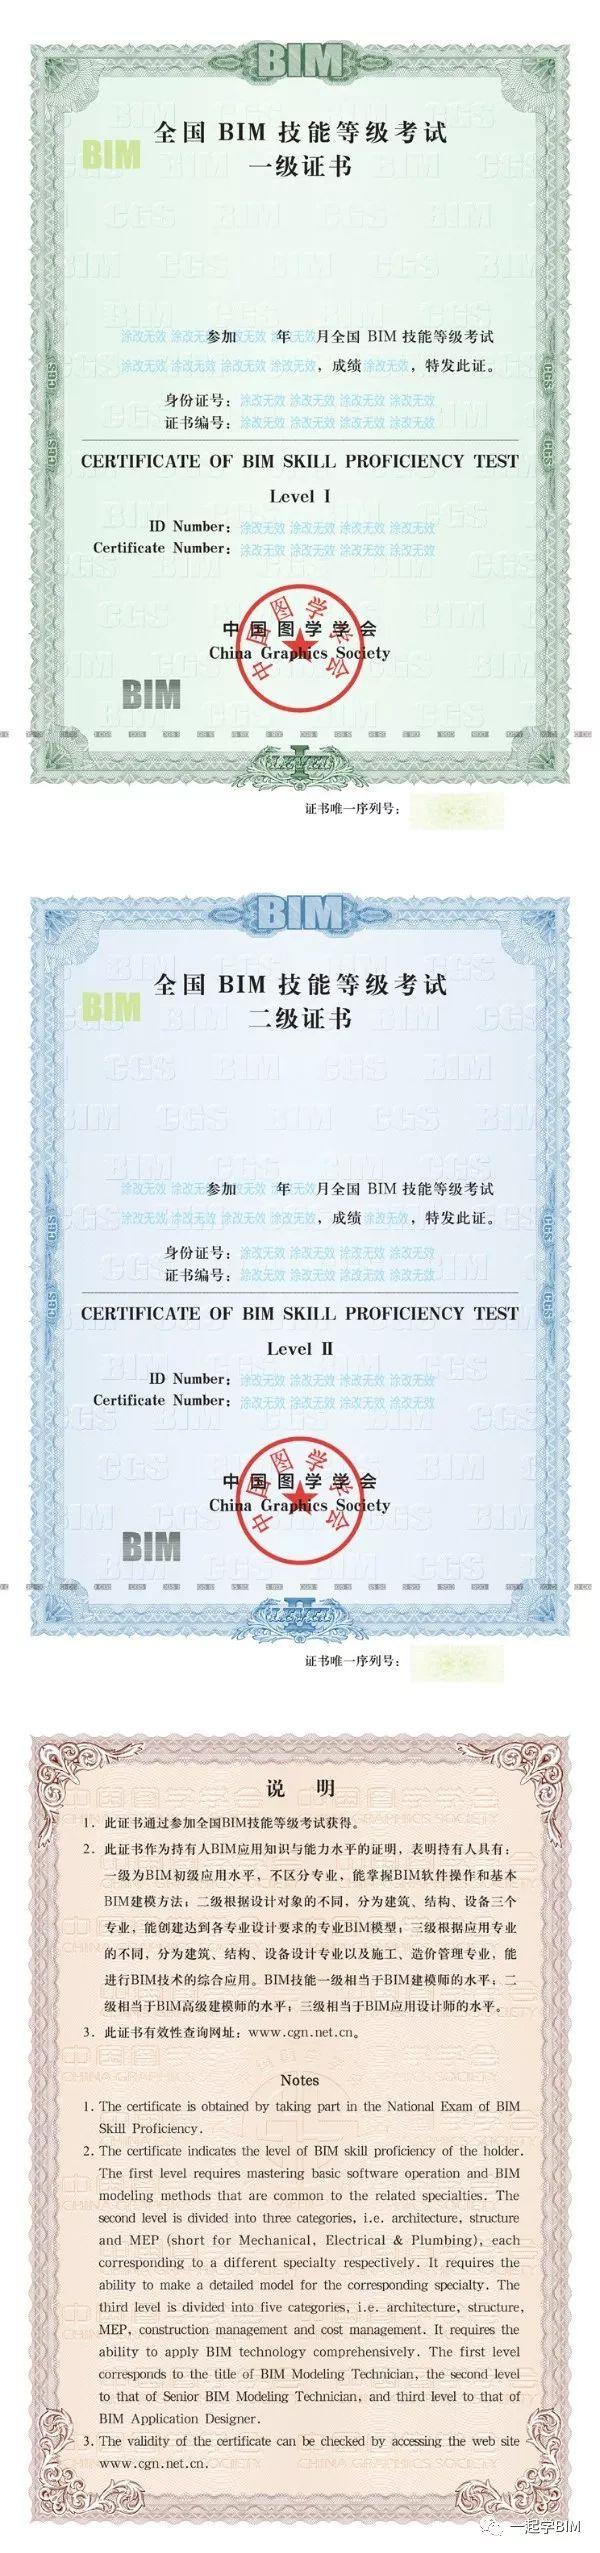 bim建模师(不分专业)《全国bim技能等级考试证书》由中国图学学会颁发